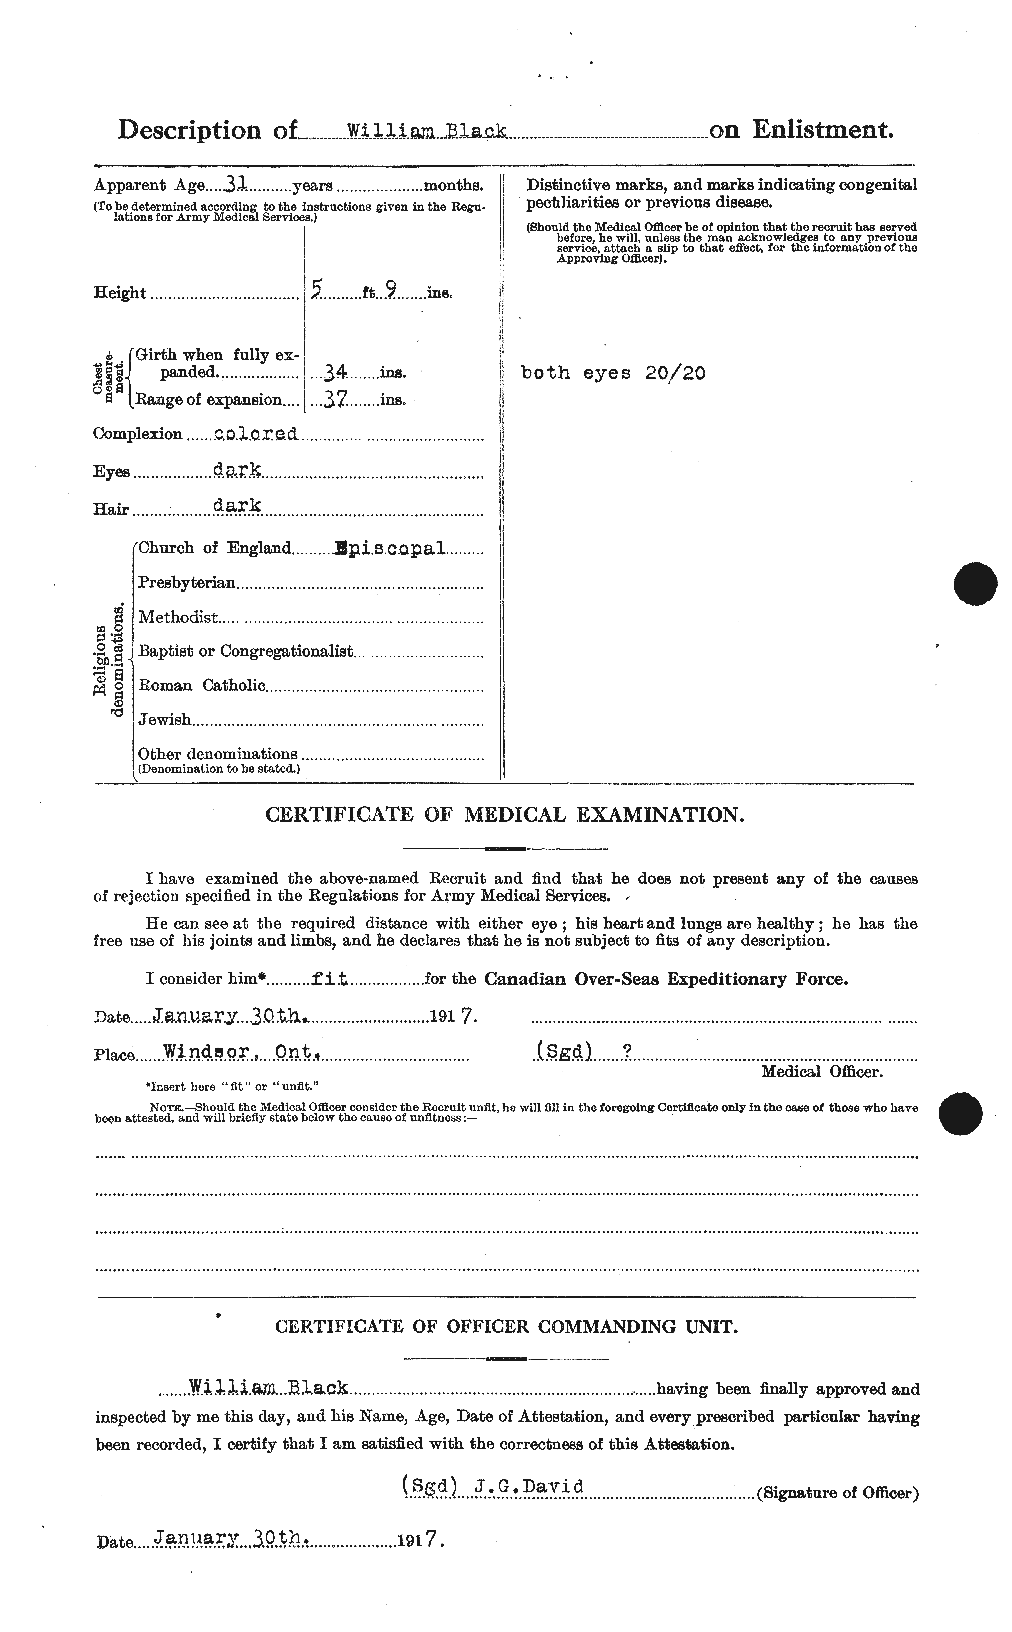 Dossiers du Personnel de la Première Guerre mondiale - CEC 247657b